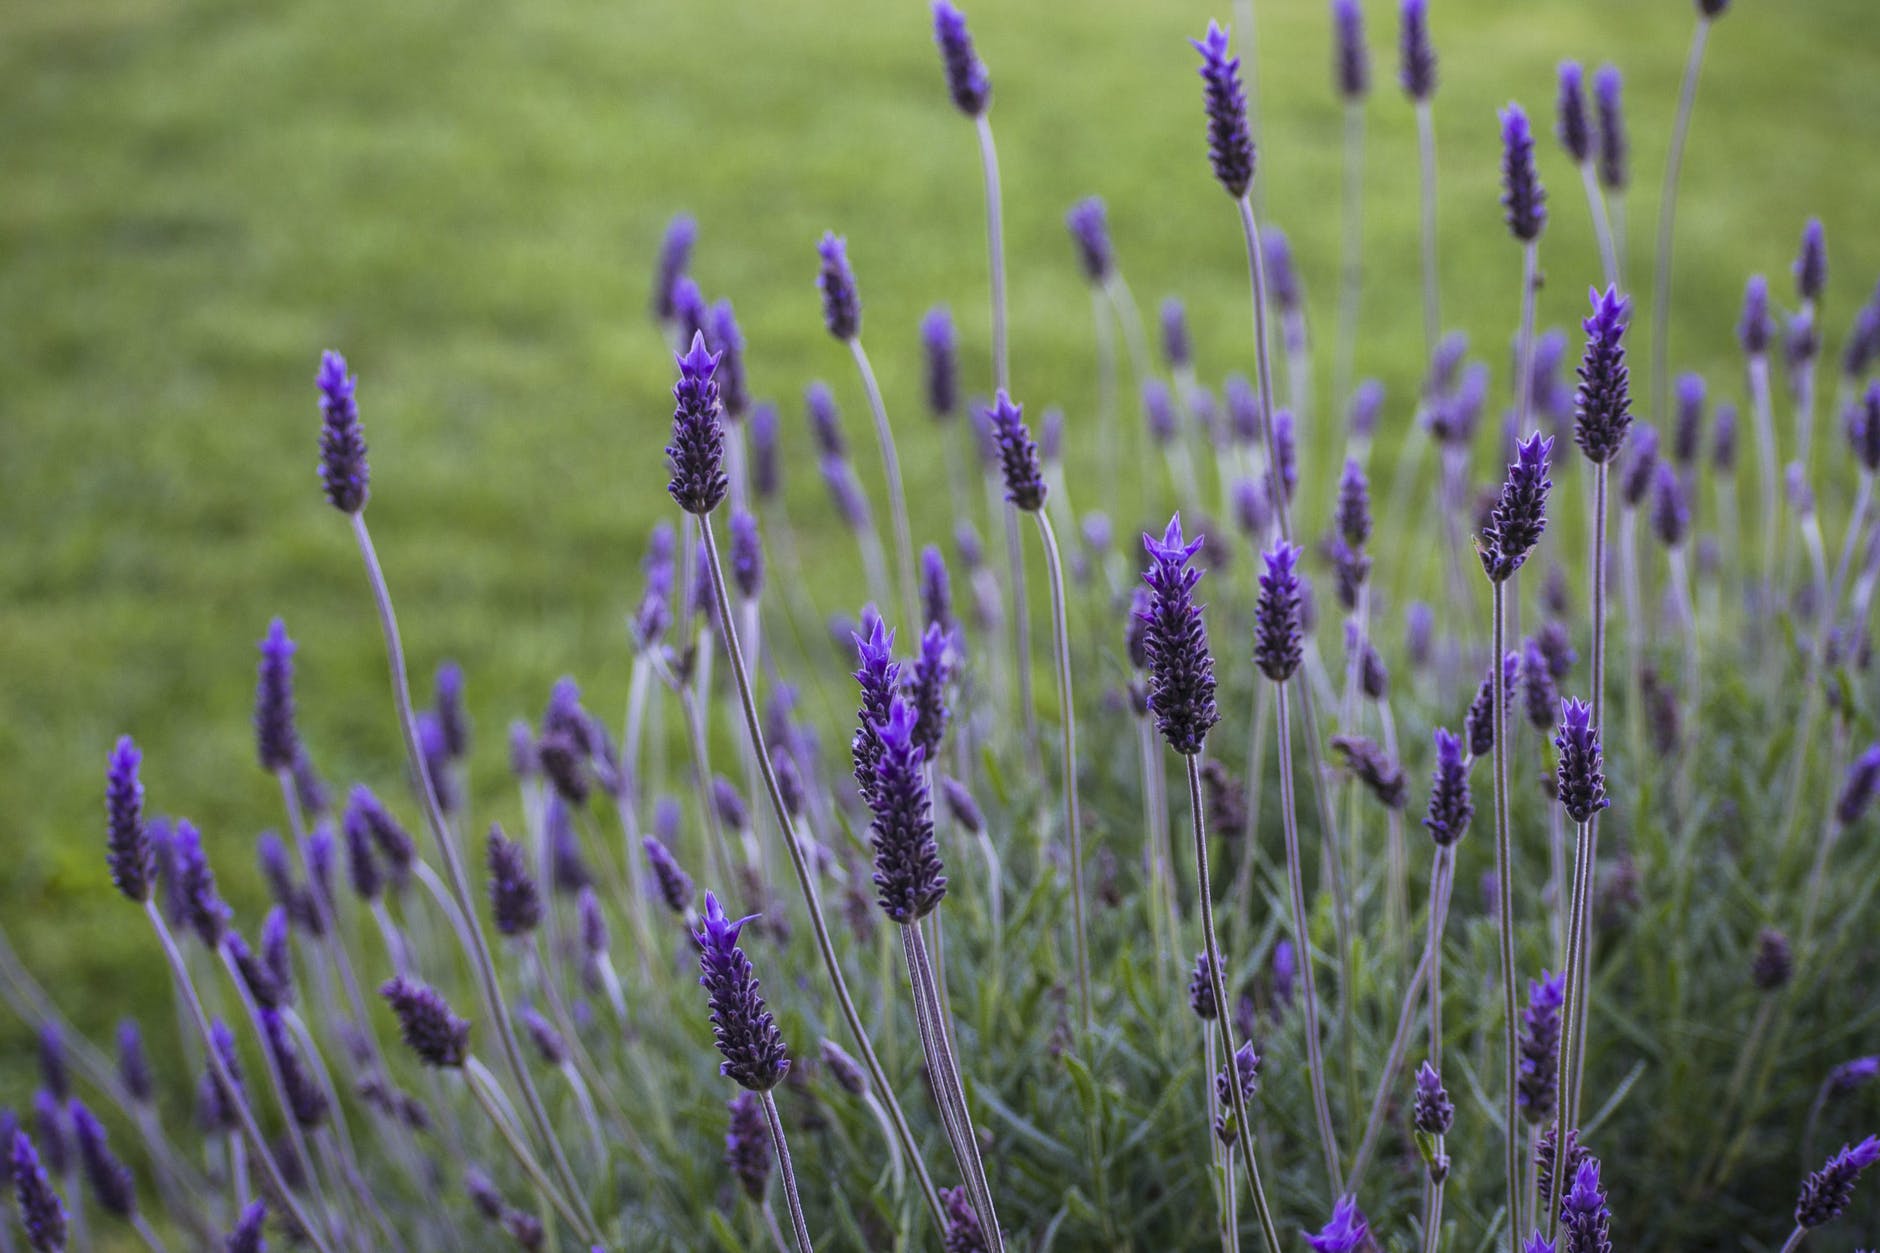 purple flower in green grass field